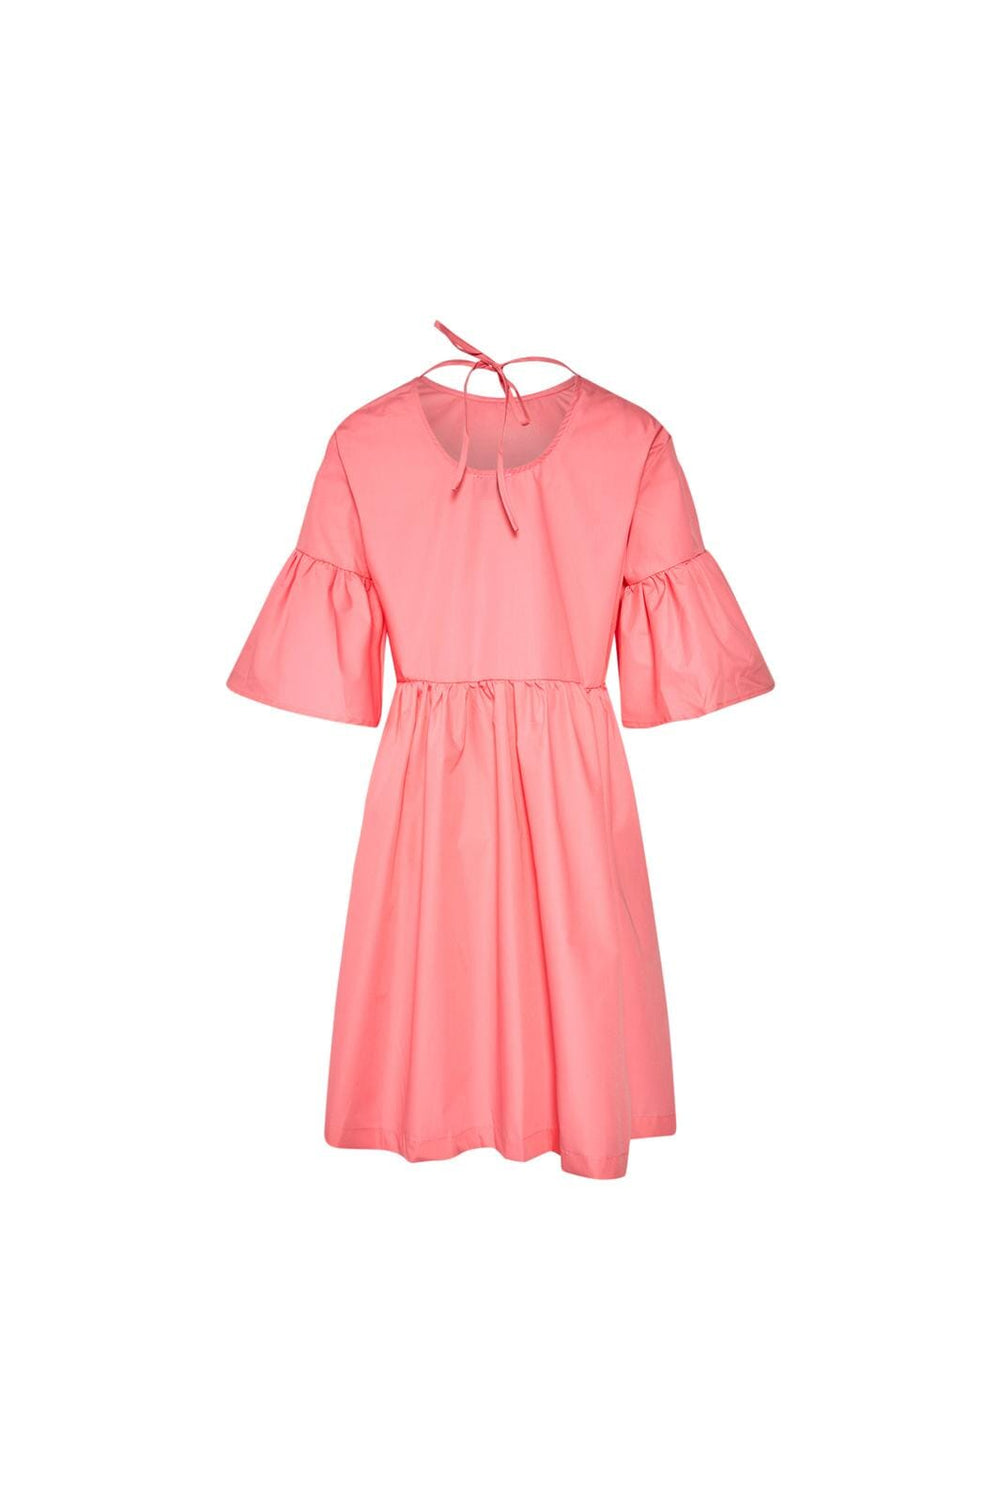 Noella - Adaleide Dress - 017 Pink